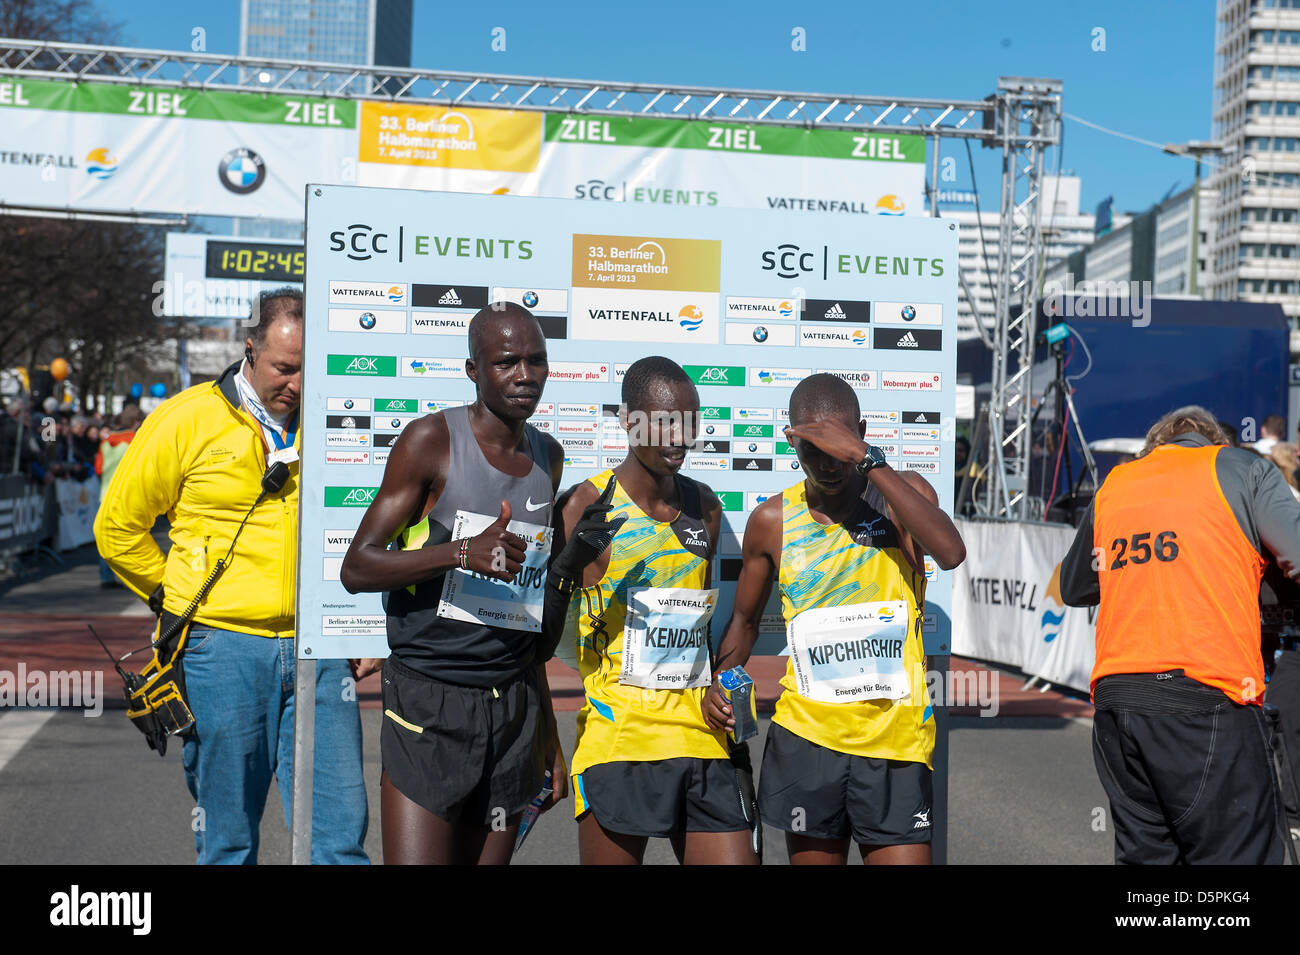 Berlino, Germania. 7 Aprile, 2013. Berlin Half Marathon 2013 con la vittoria in uomini della gara andando a Giacobbe keniota Kendagor 59:11 minuti in 1a, e 2a di Silas Kipruto con 59:31 minuti e 3 al Victor Kipchirchir con 59:39 minuti. La gara femminile è andato in Kenya, con Chelea Kiprop vincente (1:07:54), 2 files Ongori (1:08:01) e terza Mai Ito (1:10:00) dal Giappone. Credito: © Gonçalo Silva/Linea Alamy News. Foto Stock